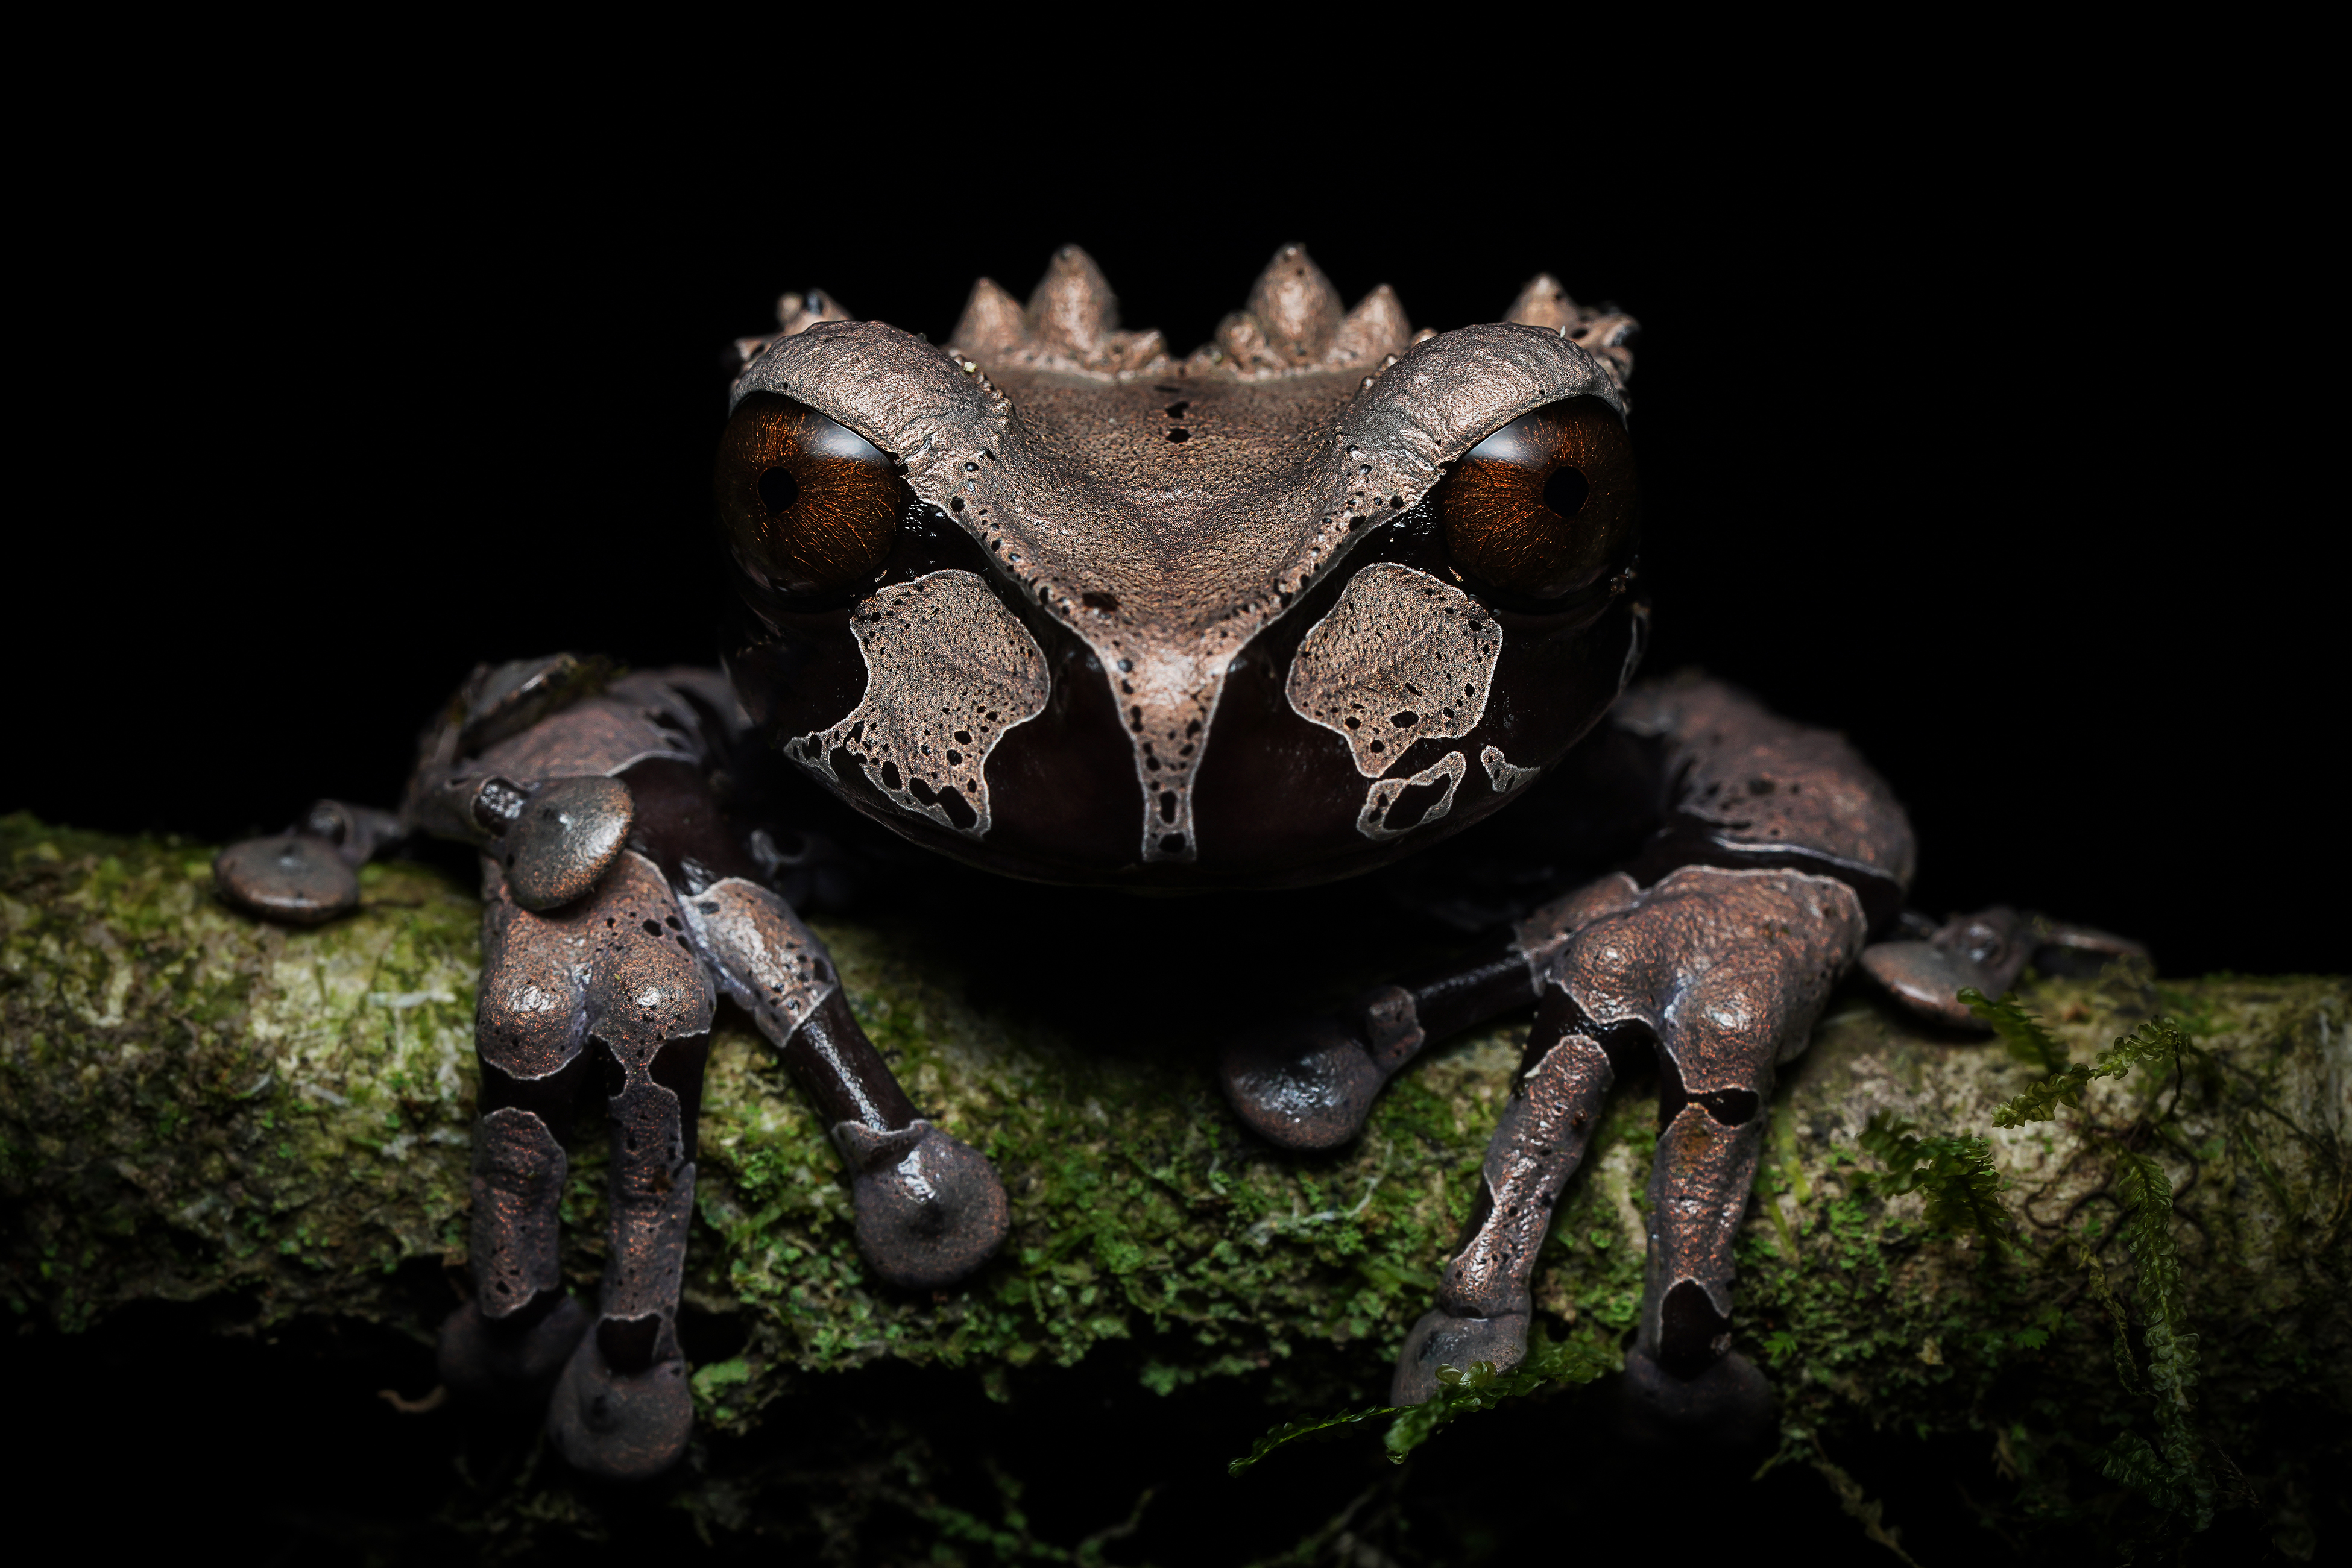 Crowned Tree Frog